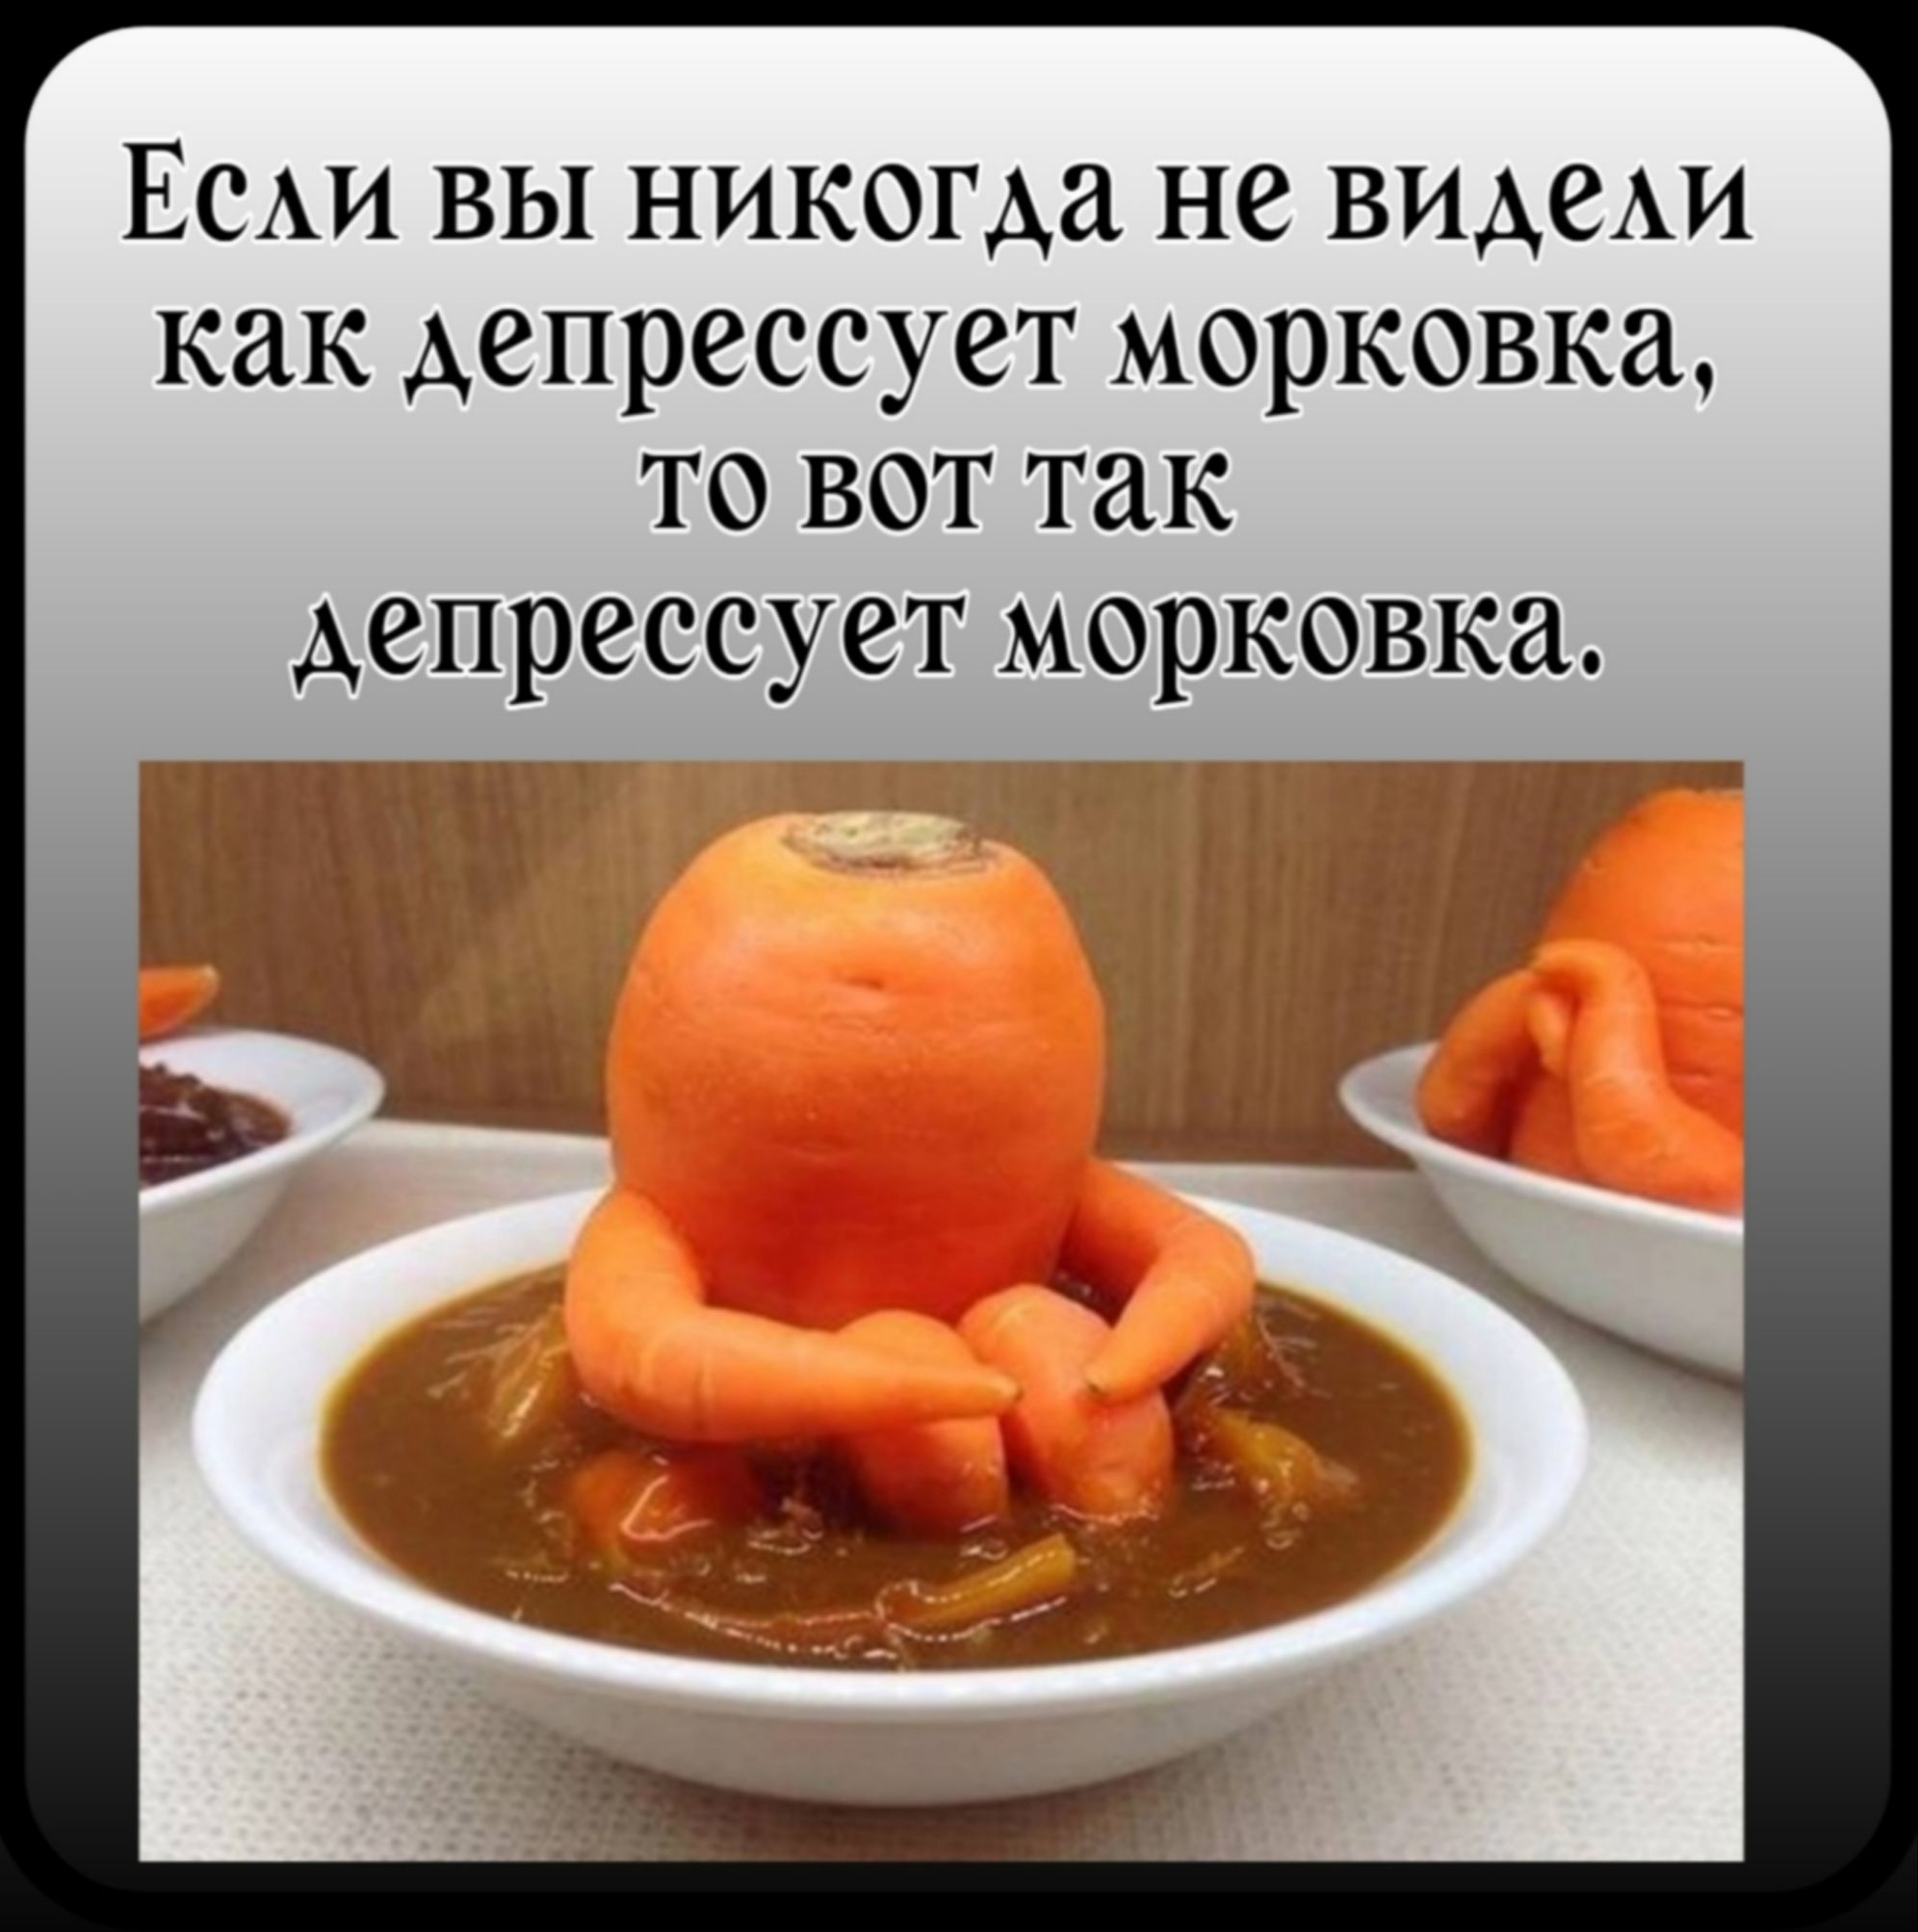 ЕСАИ вы никогда не ВИАВАИ как Аепрессует морковка то вот так депрессует морковка